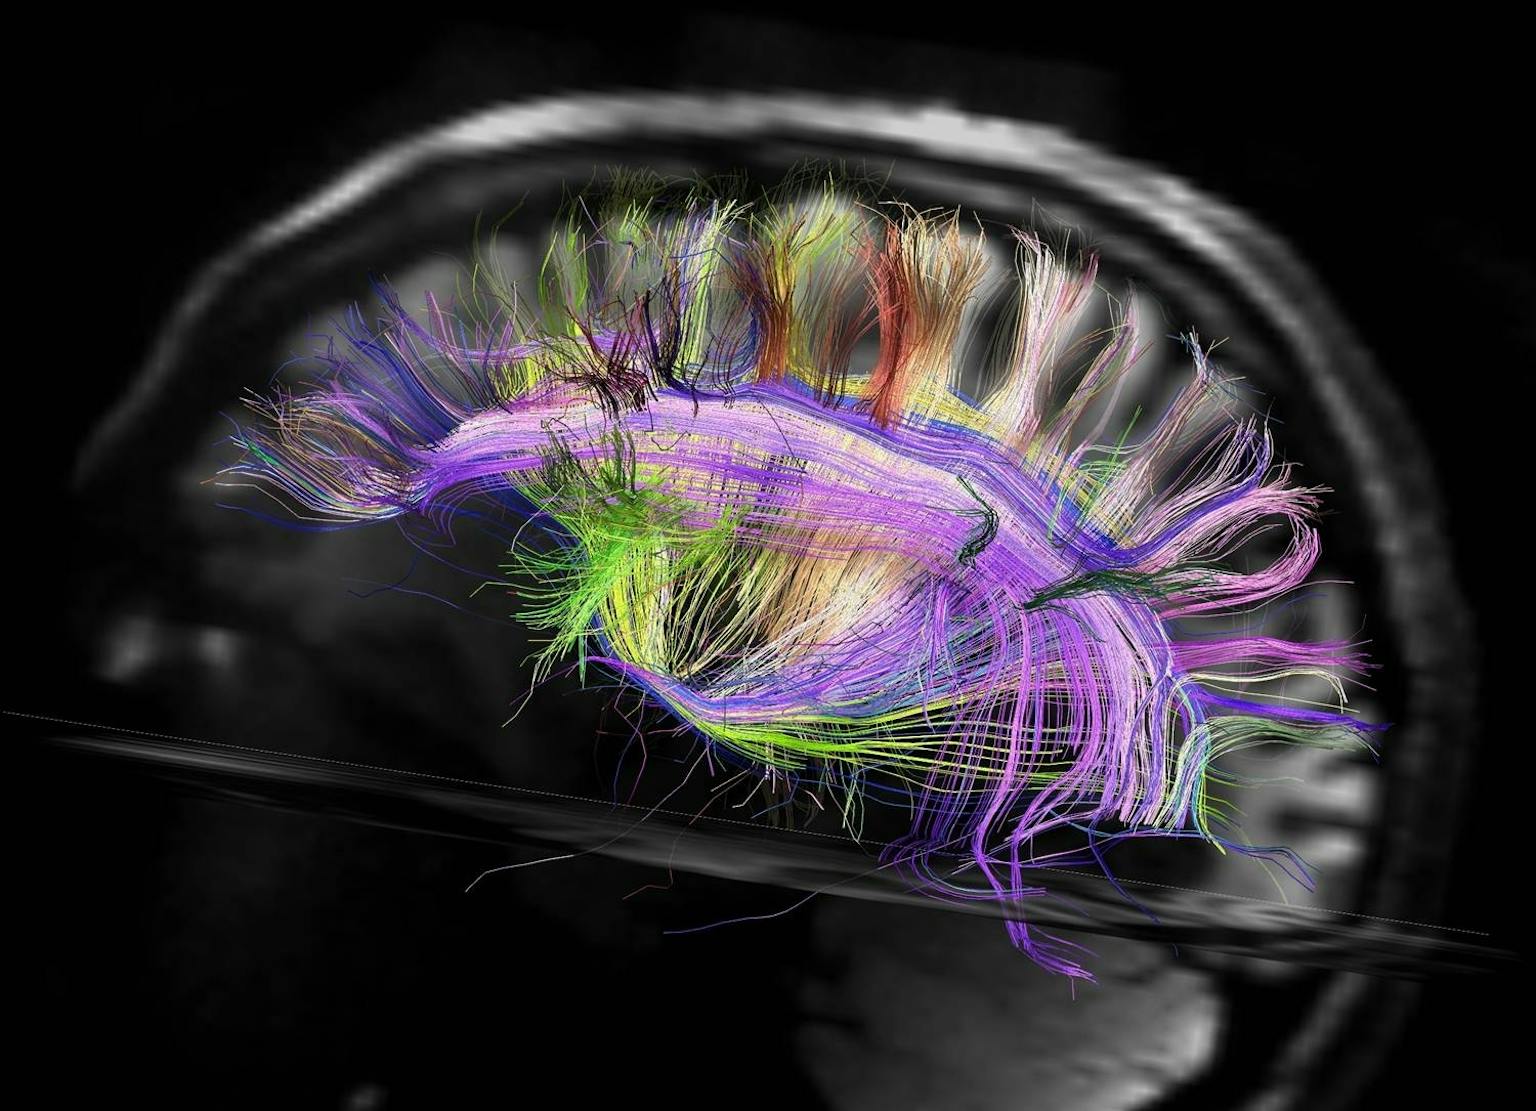 Een MRI-afbeelding van ons brein. De zenuwcellen en de verbindingen me andere cellen zijn kleurrijk weergegeven.